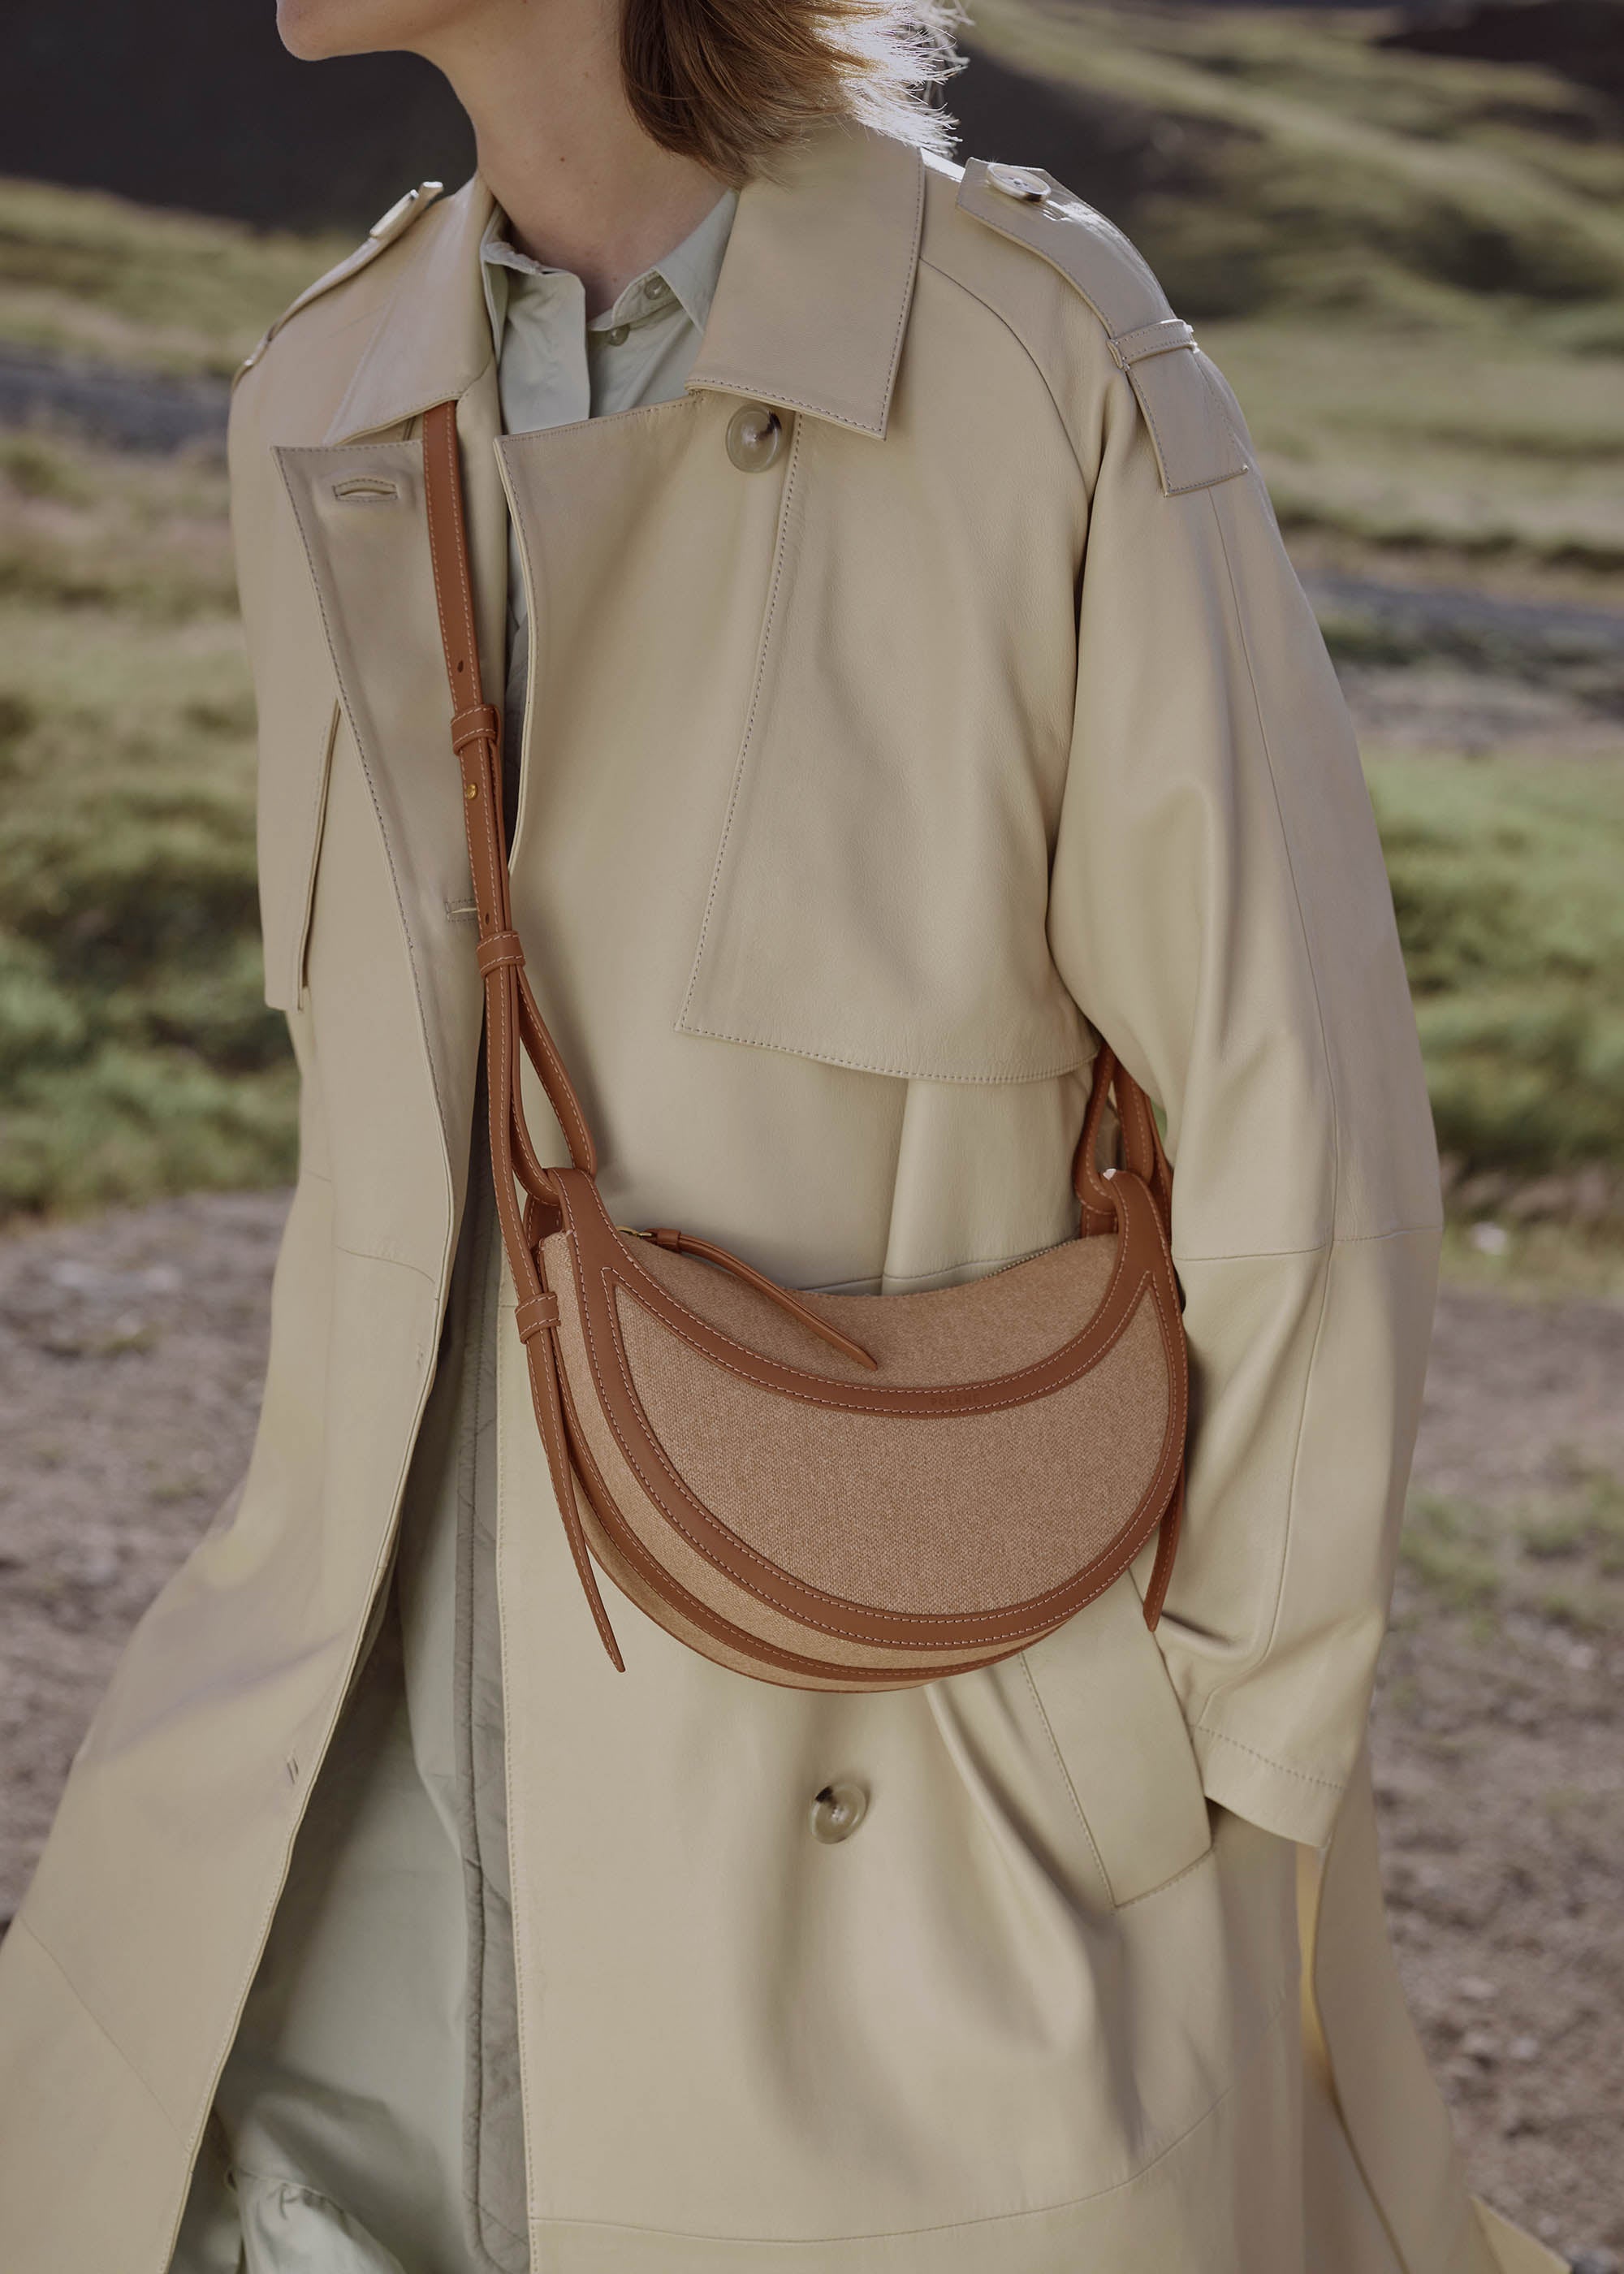 Polène | Bag - numéro Dix - Monochrome Camel Textured Leather